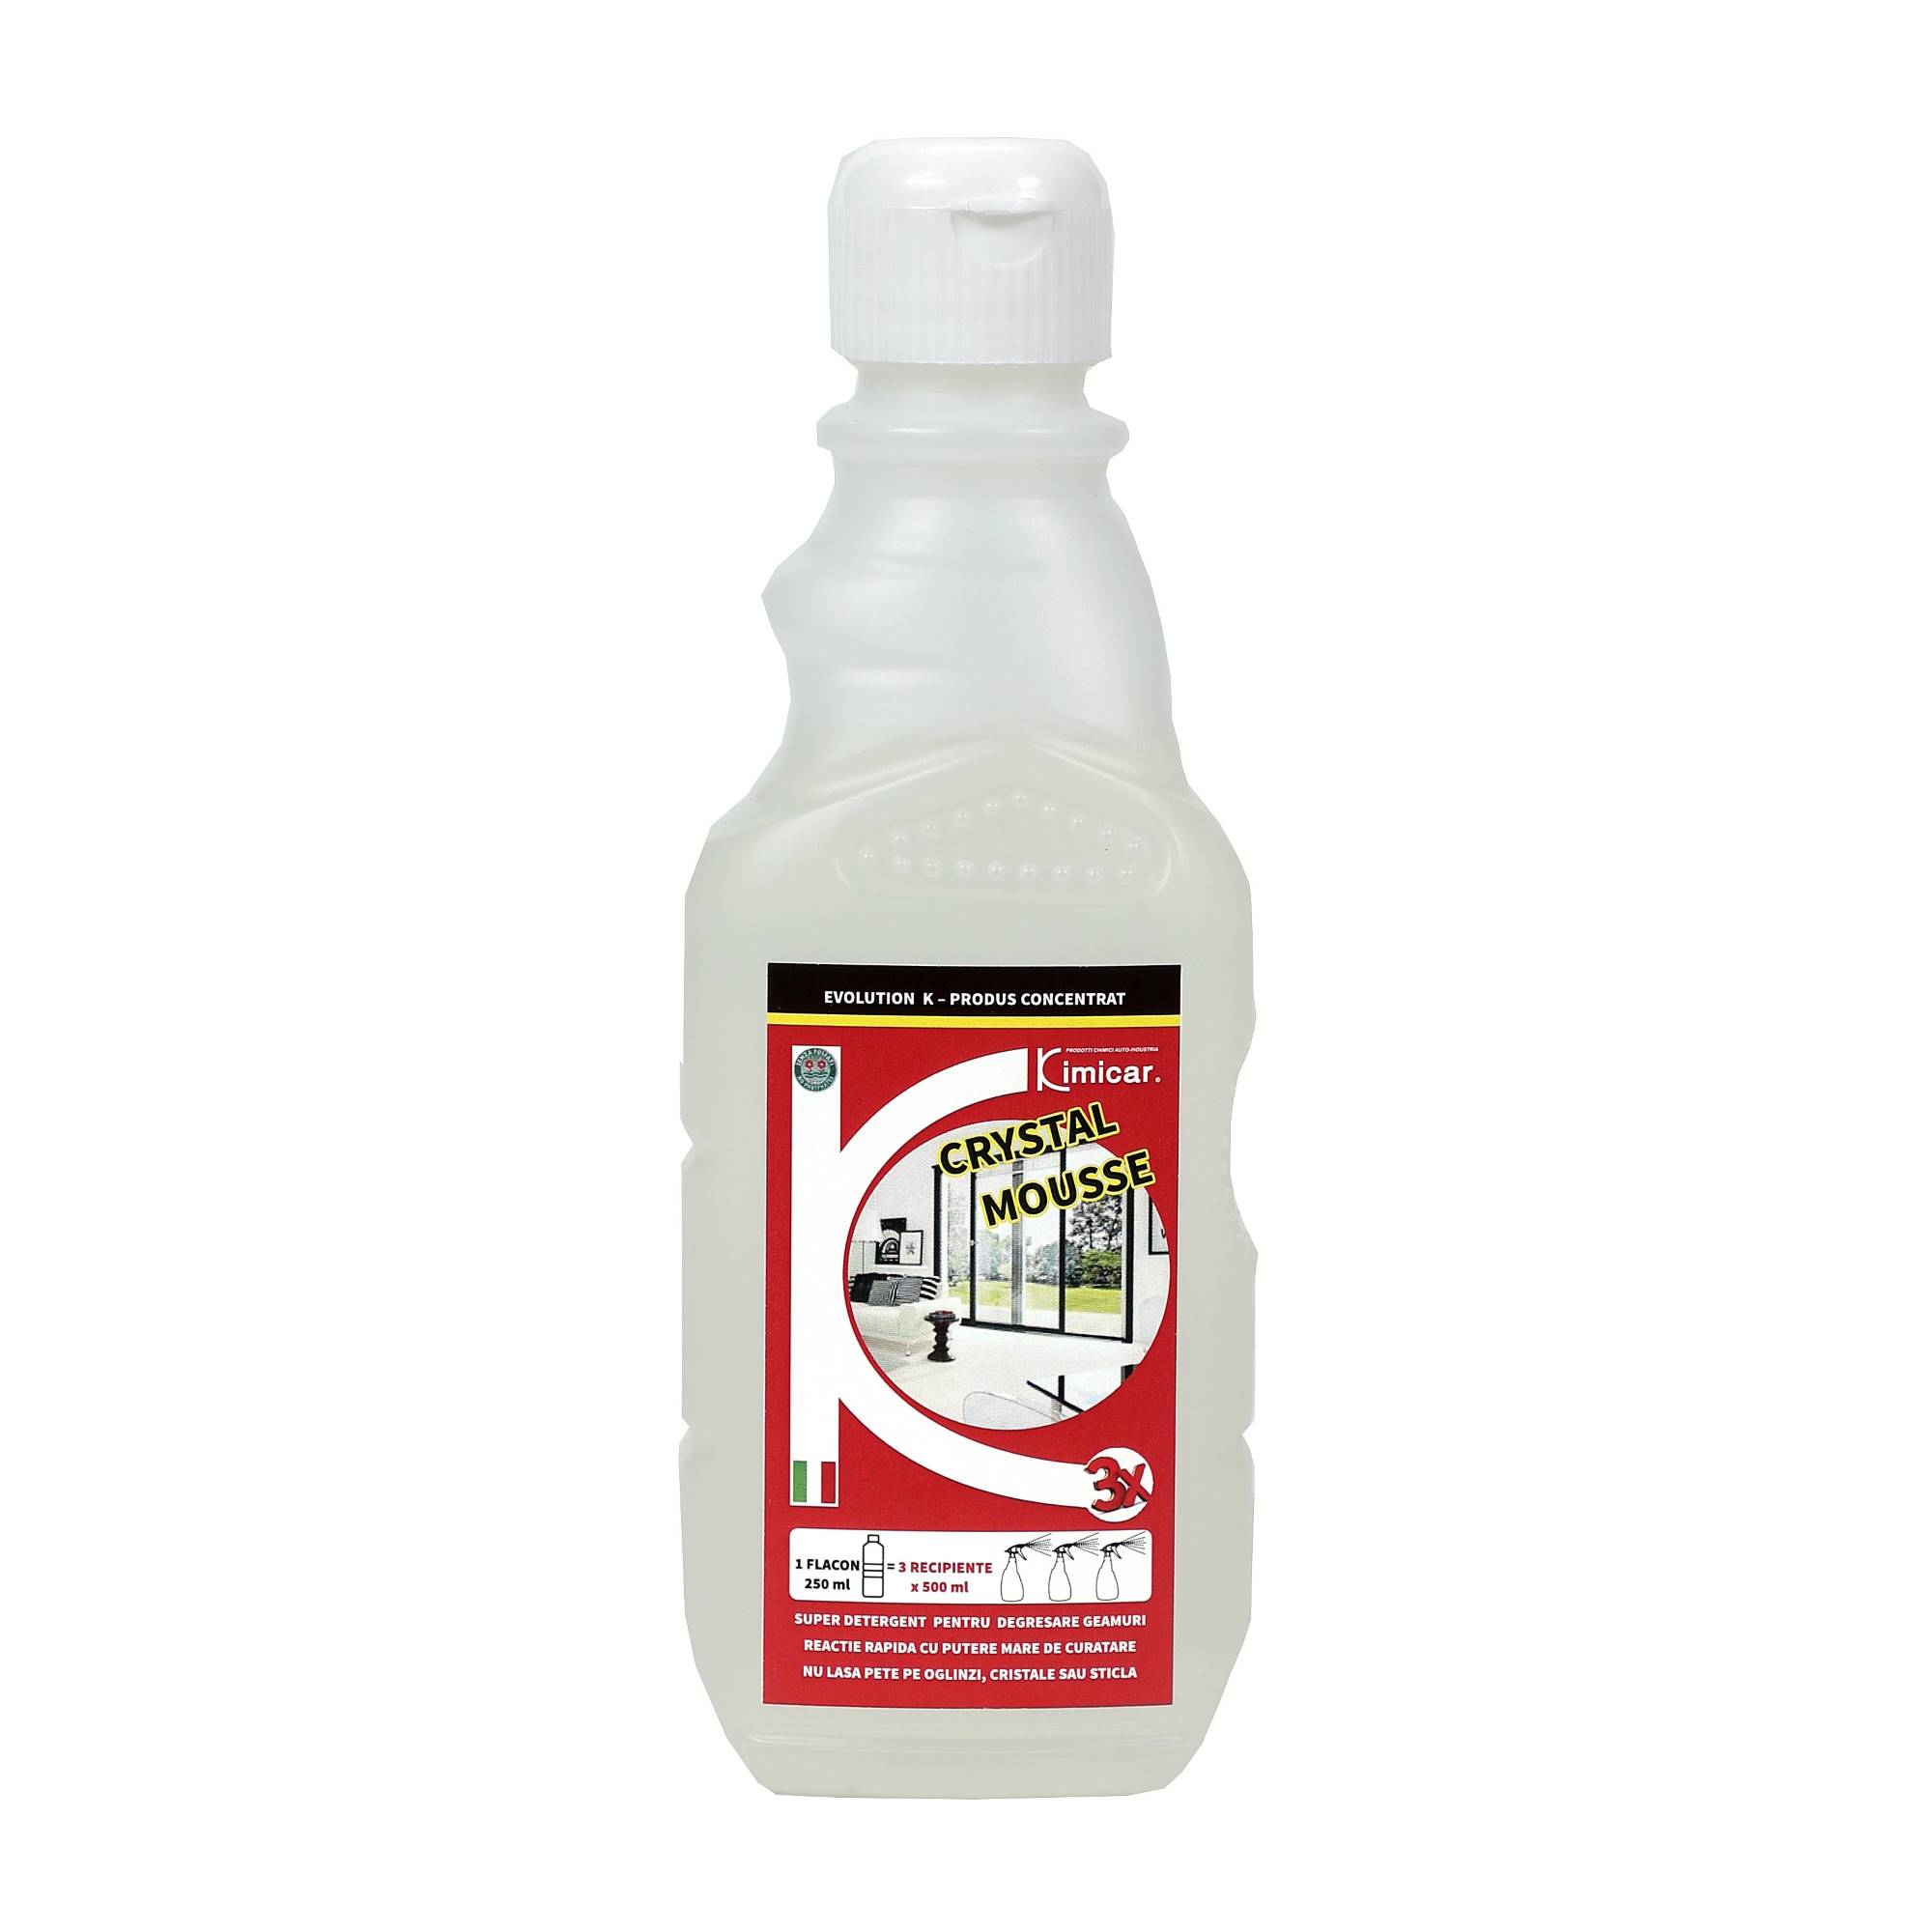 CRYSTAL MOUSSE detergent pentru curatare geamuri, oglinzi sau cristale 250 ml